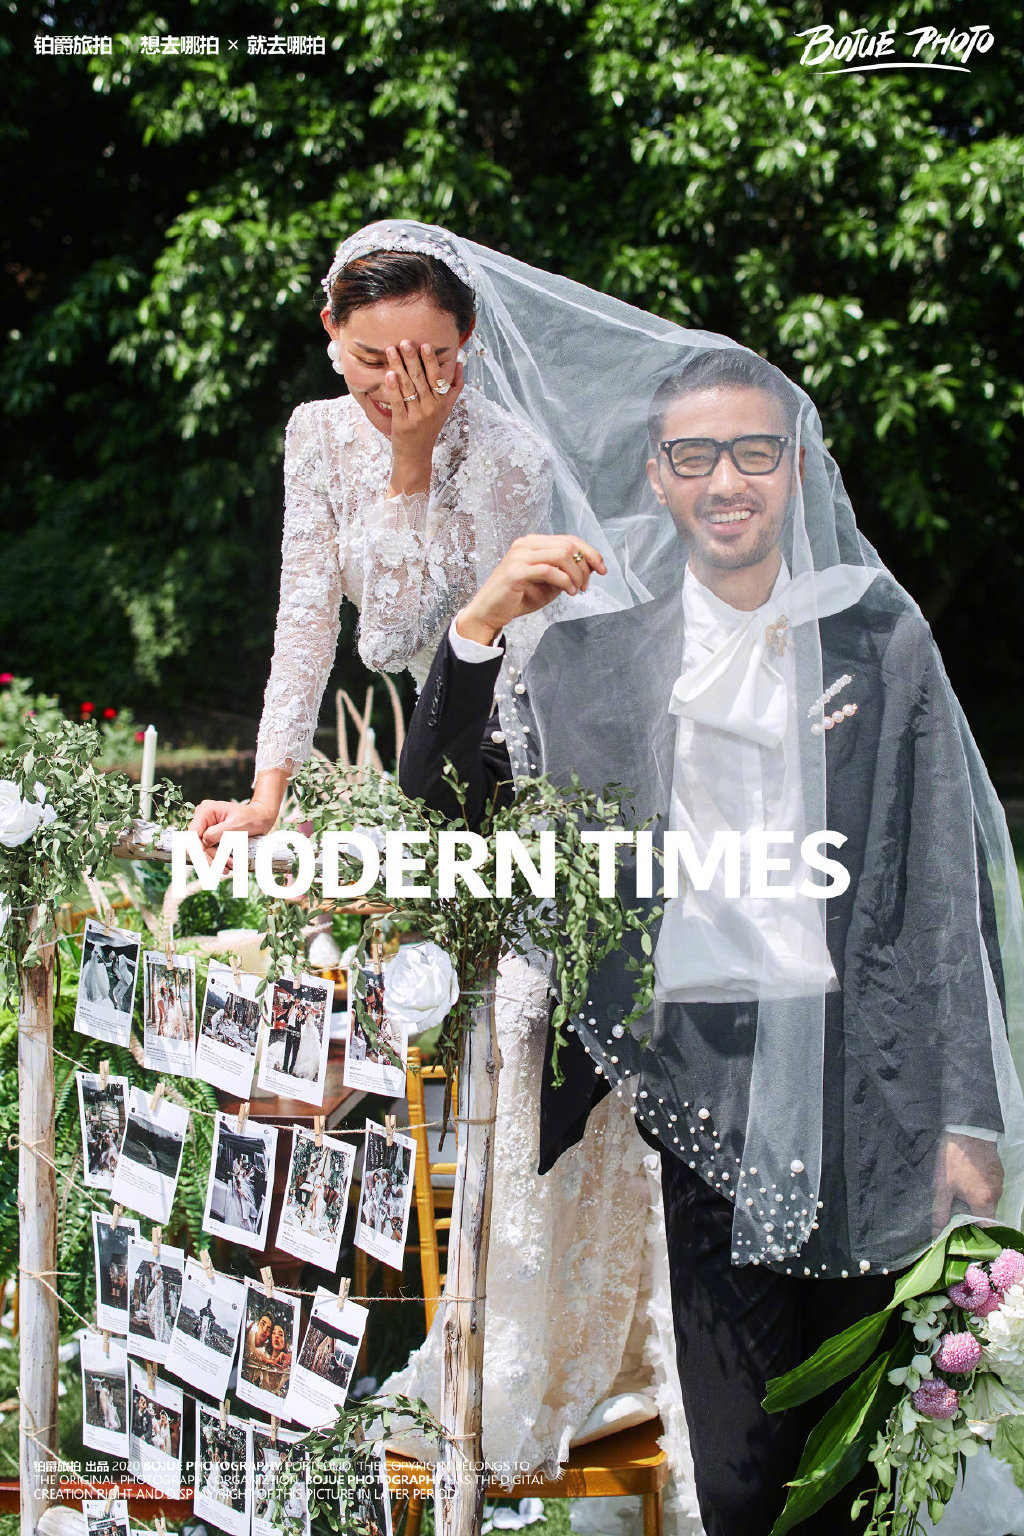 厦门几月份拍婚纱照最好看 厦门婚纱摄影最适合的季节